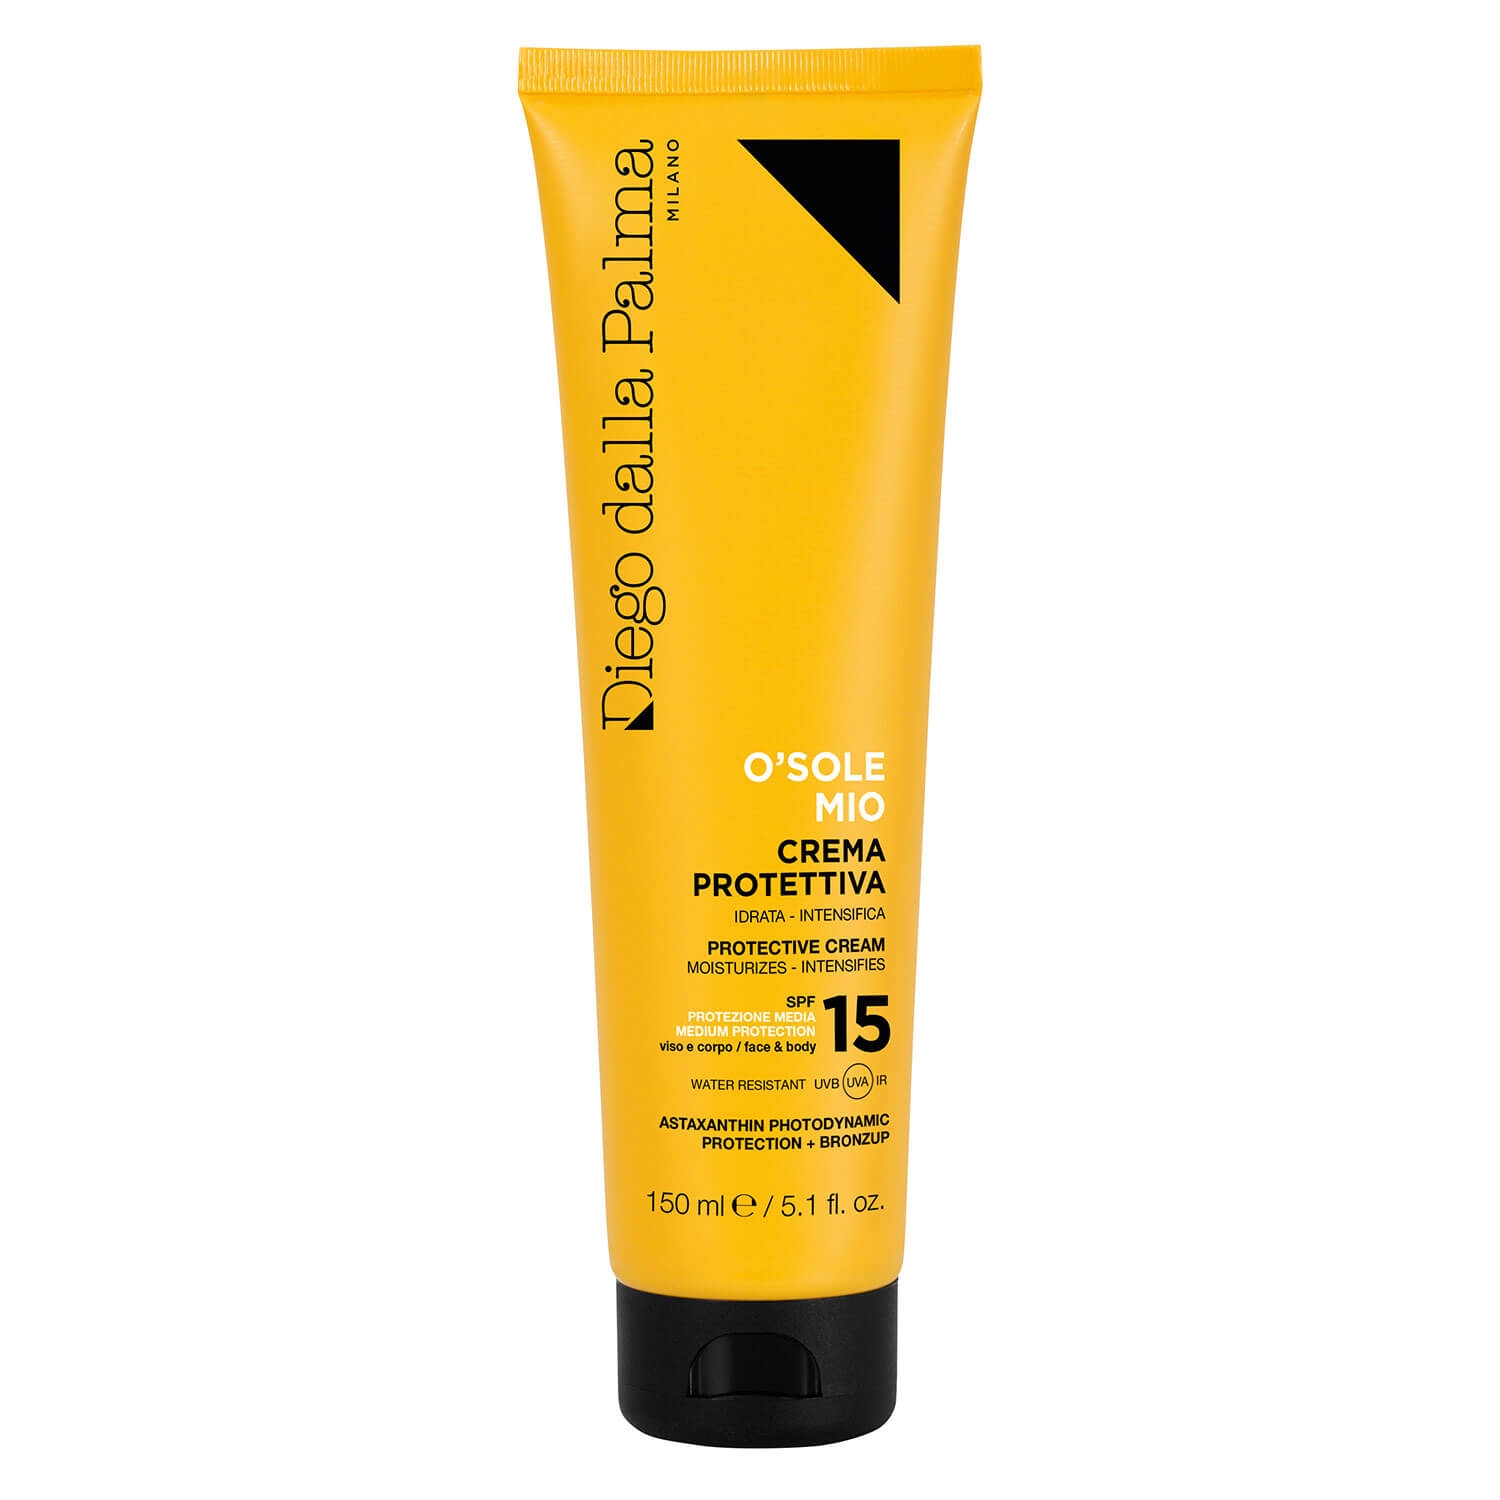 Produktbild von Diego dalla Palma Sun - O'SOLE MIO Protective Face & Body Cream SPF15